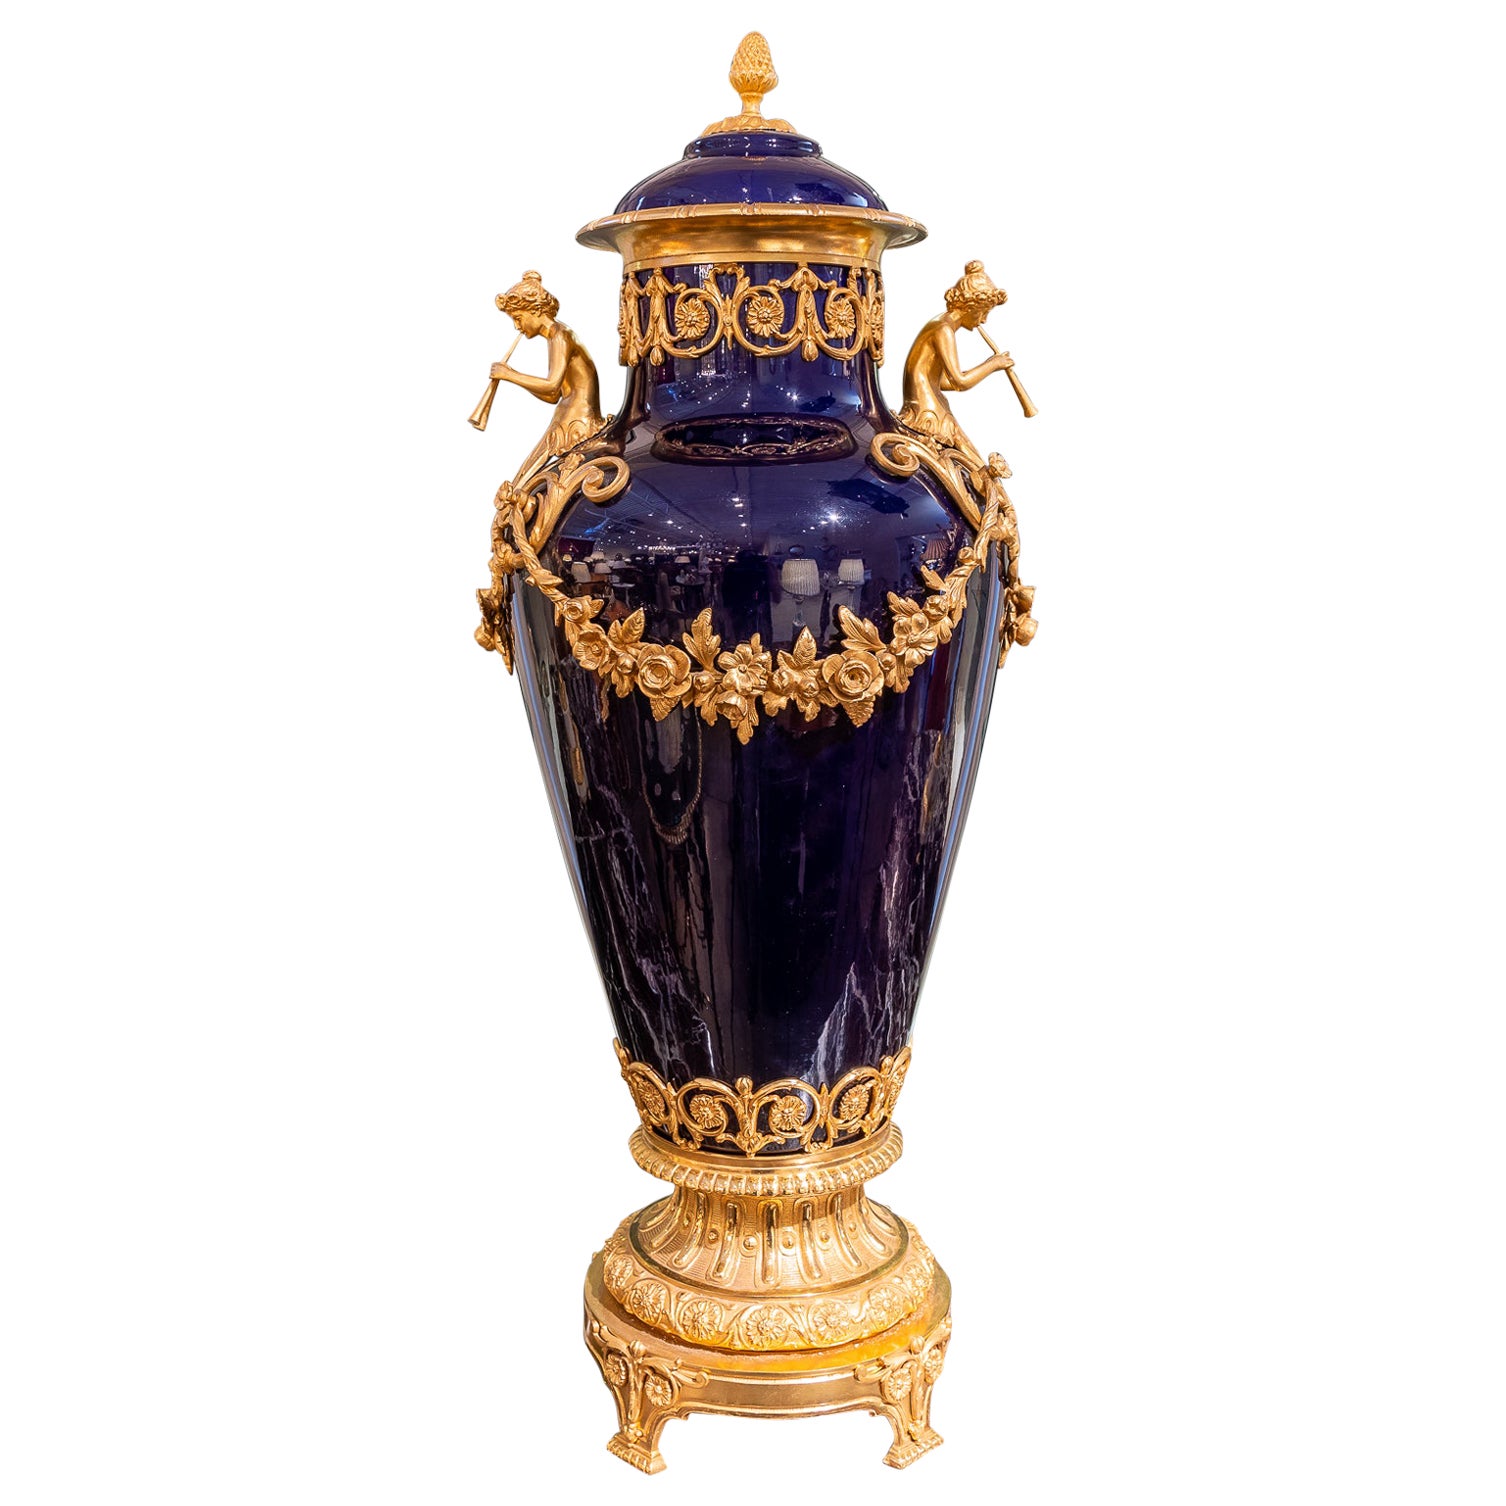 Fine Large Lidded 19th Century Sevre's Porcelain and Gilt Bronze Mounted Vase